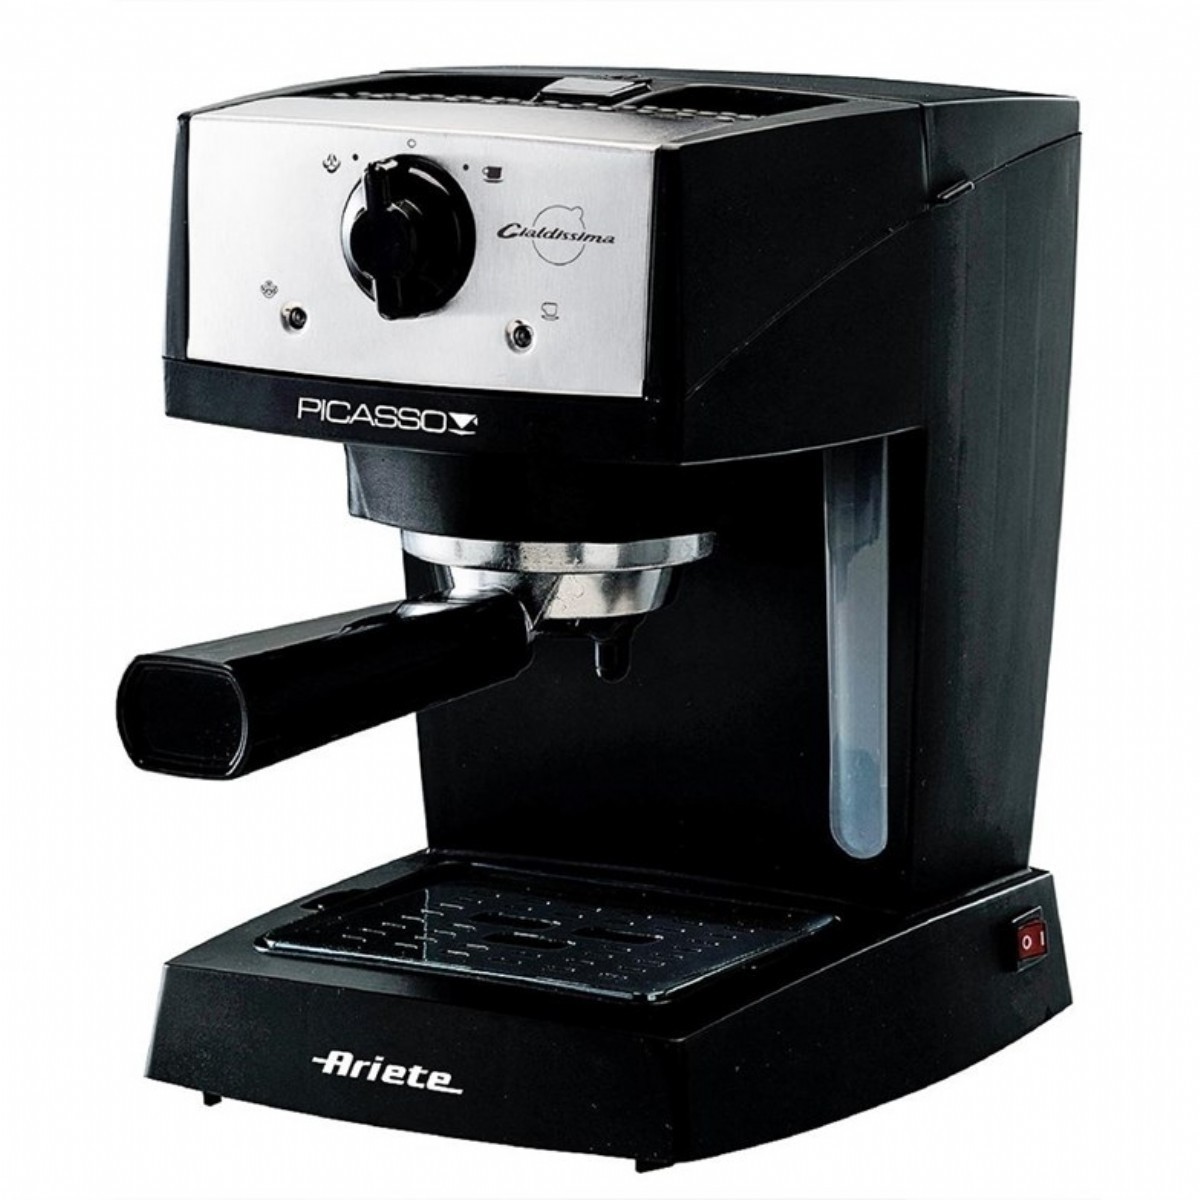 Espresso & Cappuccino Makinesi | Ariete Picasso Cialdissima 1366-50 Espresso Kahve Makinesi | ARO1366B | Ariete Picasso Espresso/cappuccino Makinesi, Ariete 1366B, Ariete Picasso Espresso/cappuccino, AR1366B fiyat | 